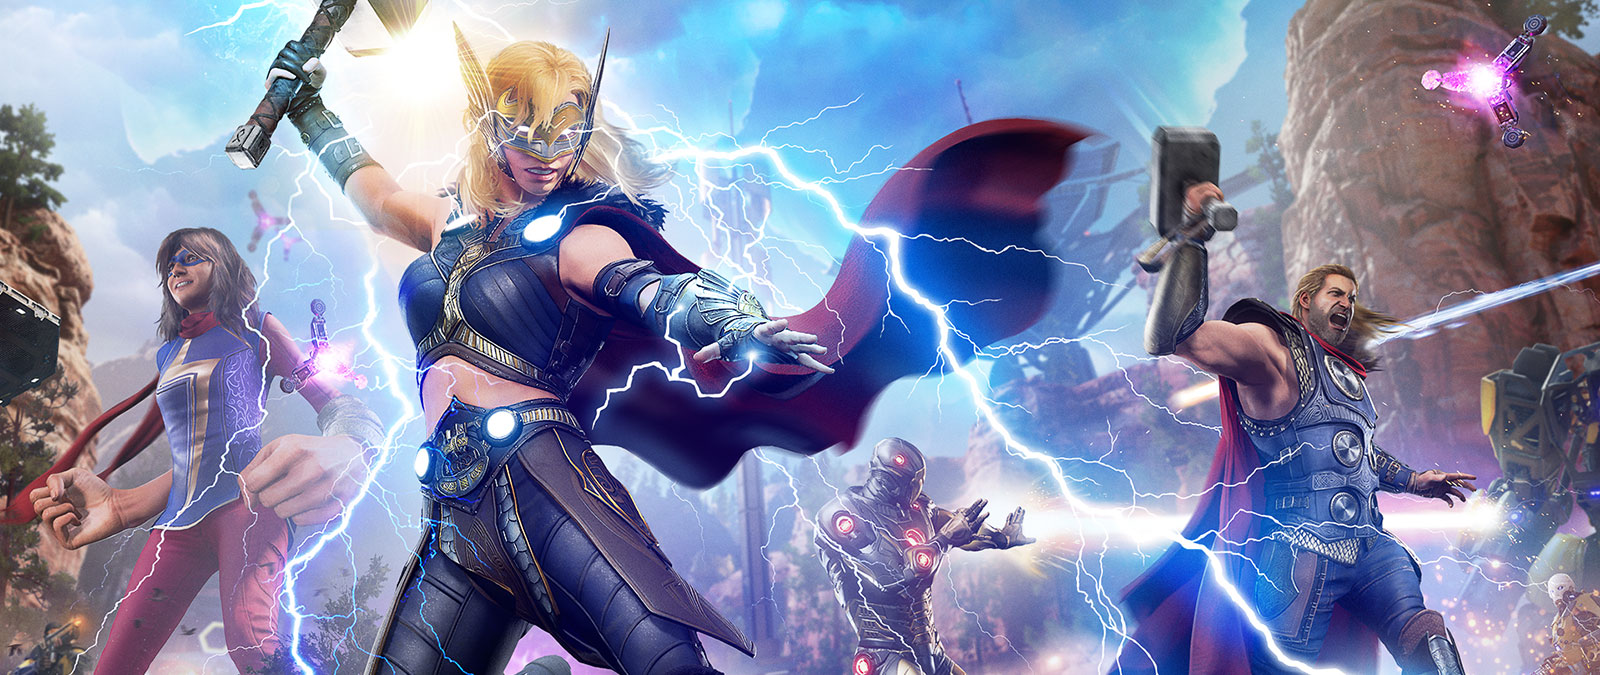 Jane Foster, der Mighty Thor, lässt einen Blitz auf einen mechanischen Feind los.